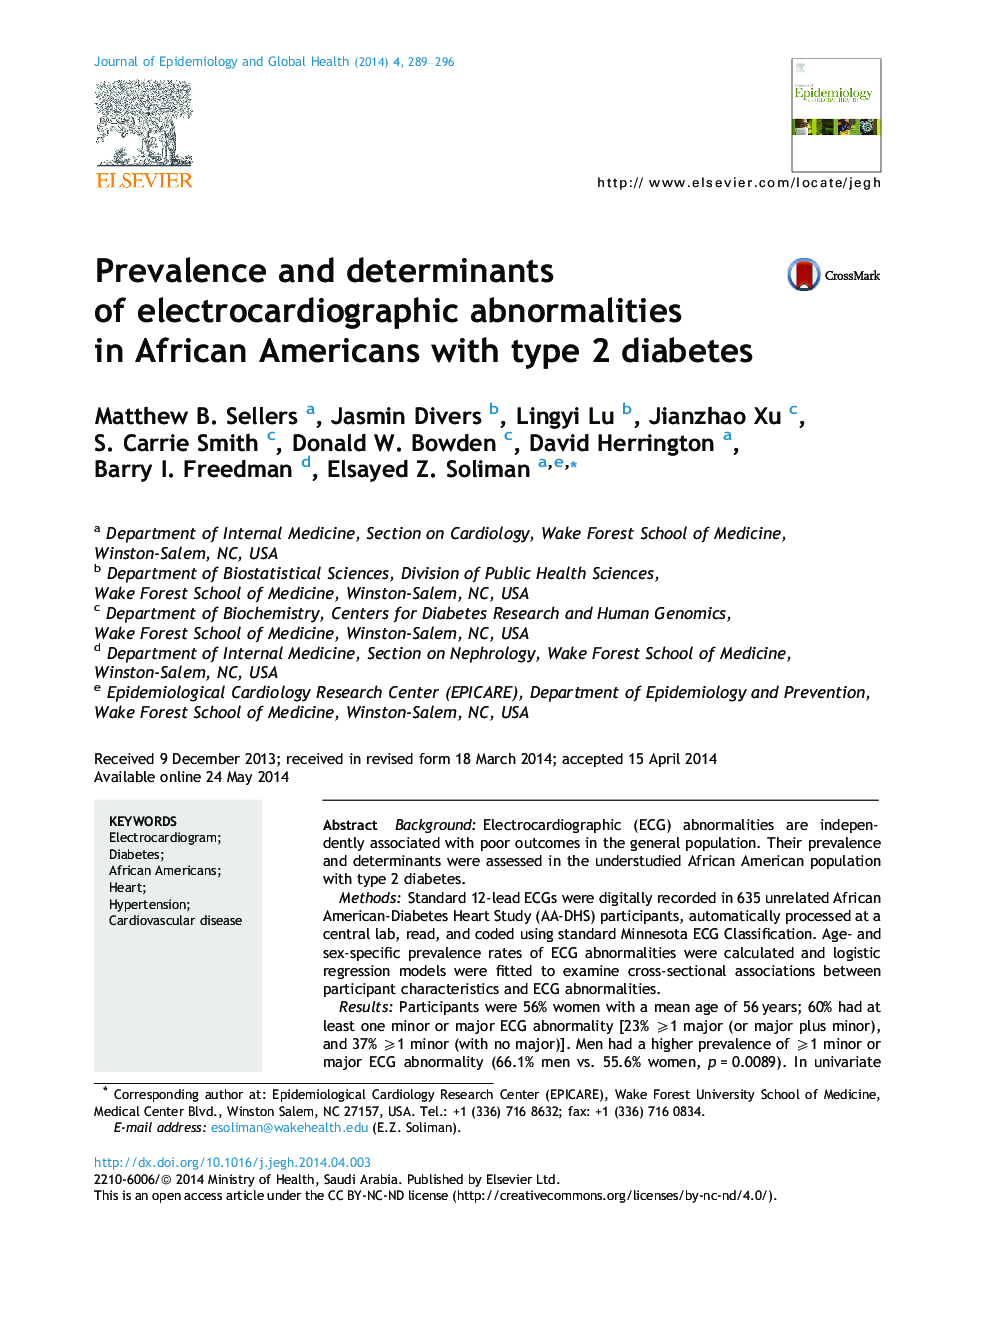 شیوع و عوامل موثر بر اختلالات الکتروکاردیوگرافی در آمریکایی های آفریقایی تبار مبتلا به دیابت نوع 2